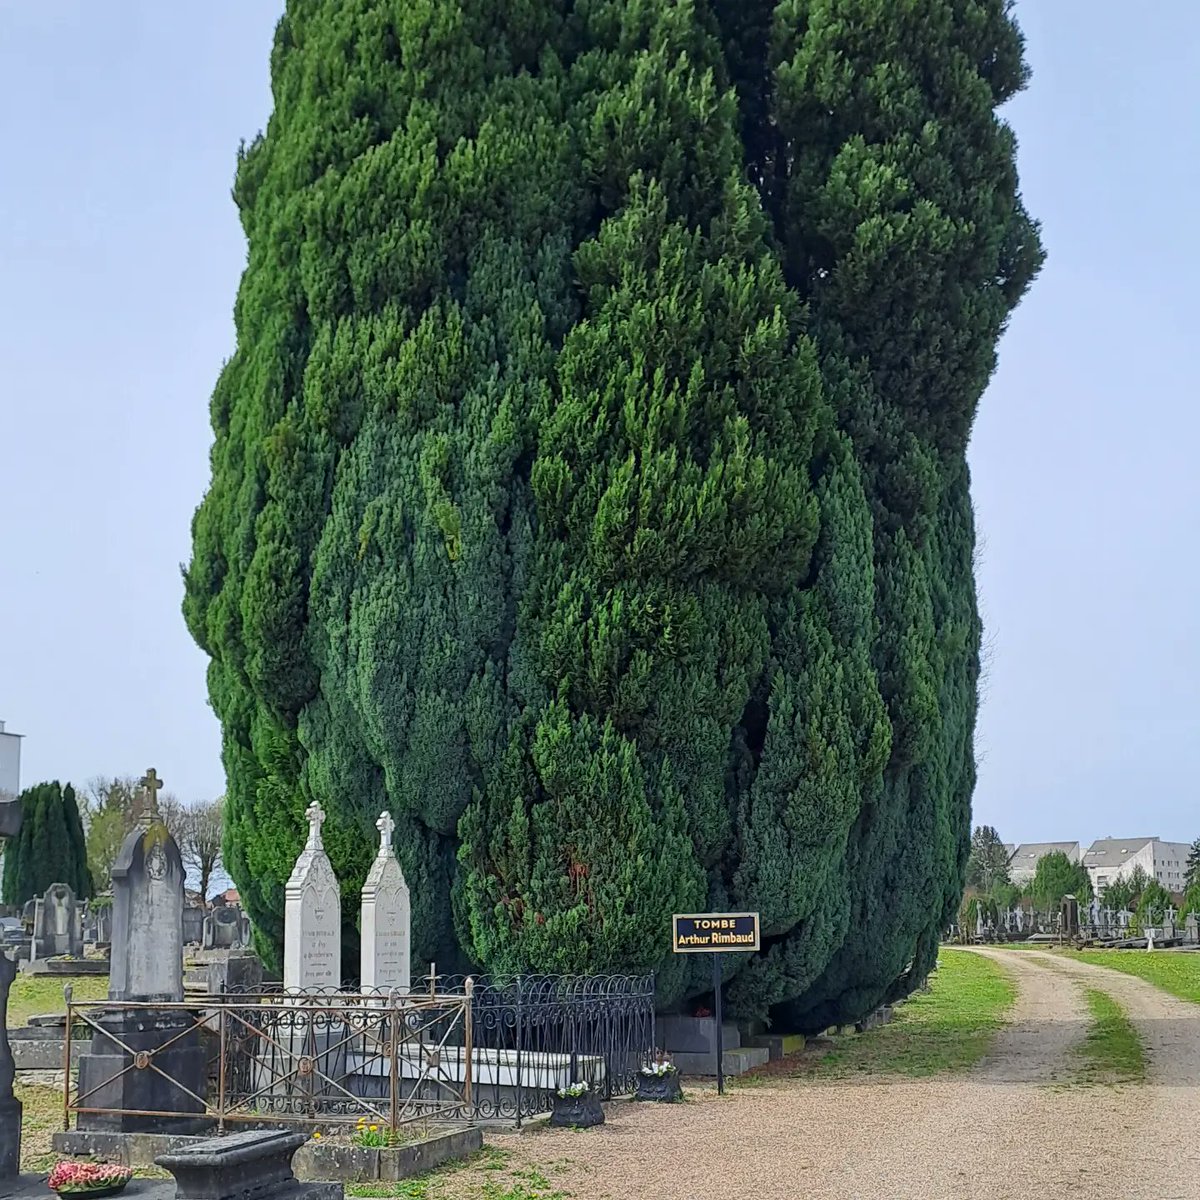 Arthur #Rimbaud's grave in Charleville-Mézières